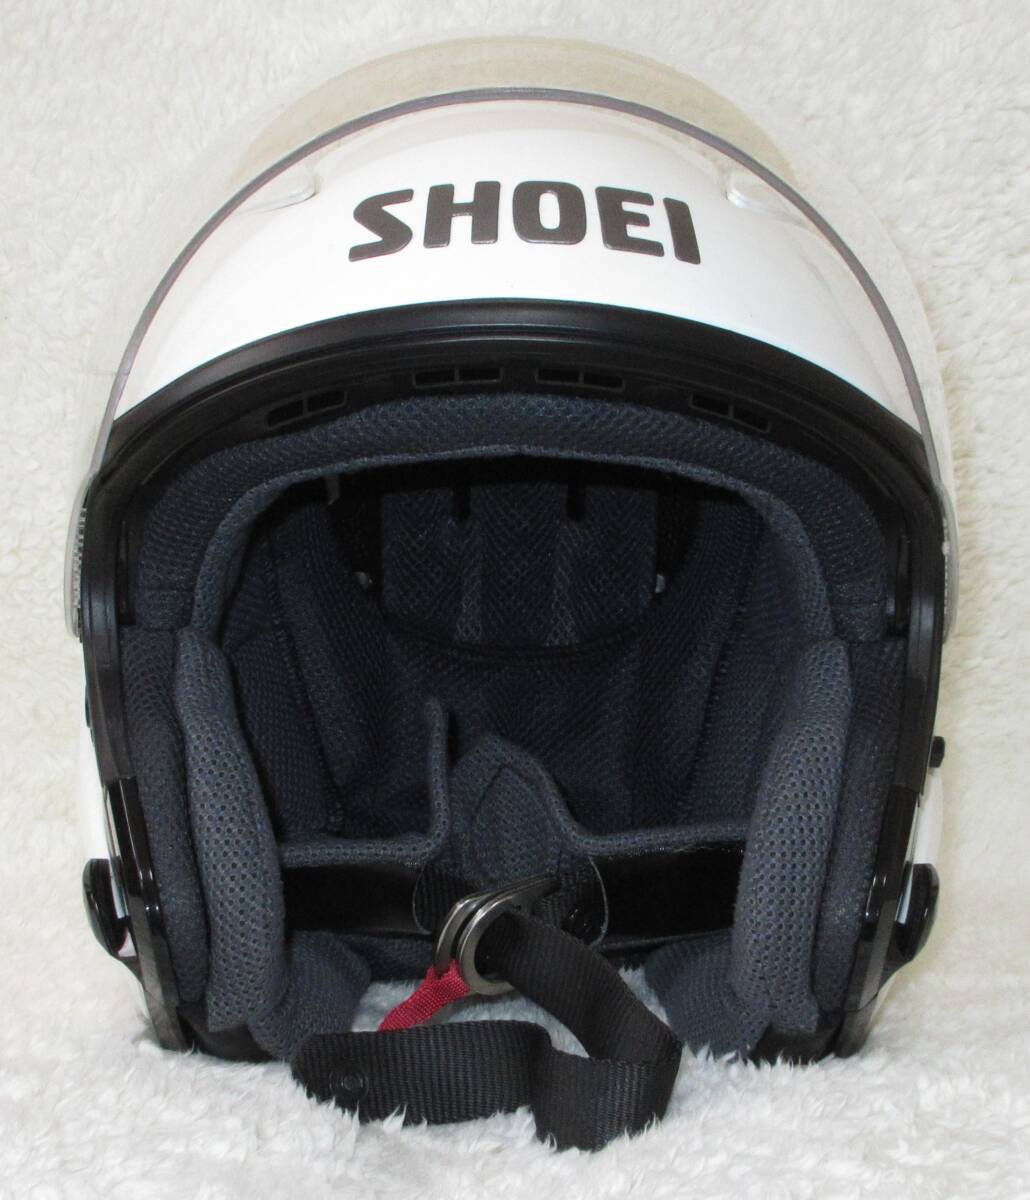 shoei ショウエイ オープンフェイスヘルメット ジェットヘルメット j-stream ホワイト Mサイズの画像1